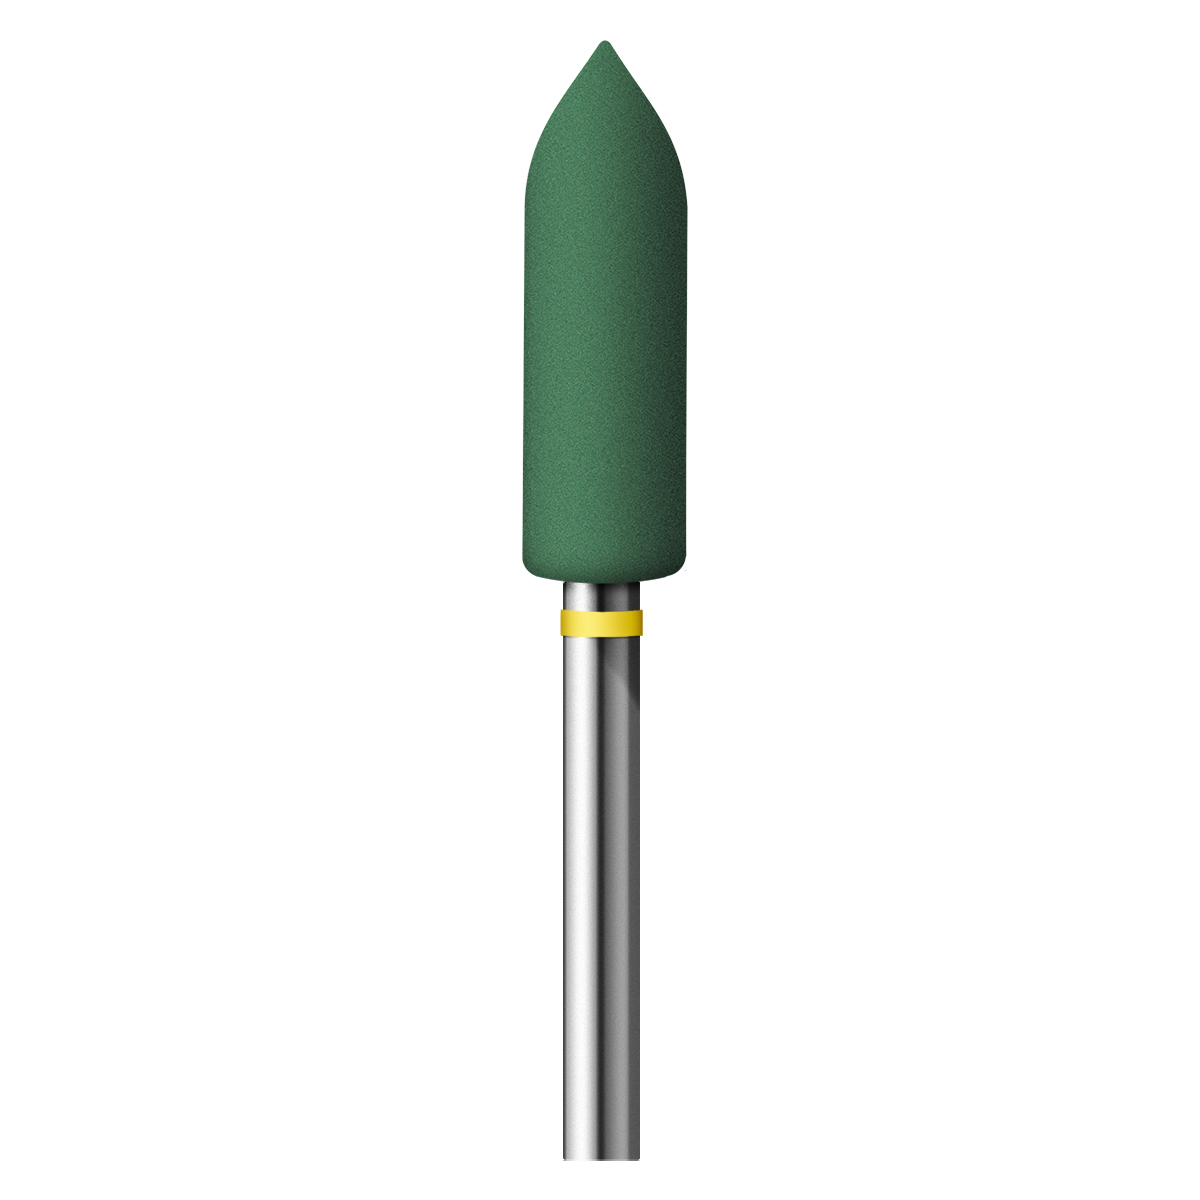 Polierer Alphaflex, grün, Torpedo, Ø 5 x 16 mm, Korn sehr fein, HP-Schaft, 12 Stück